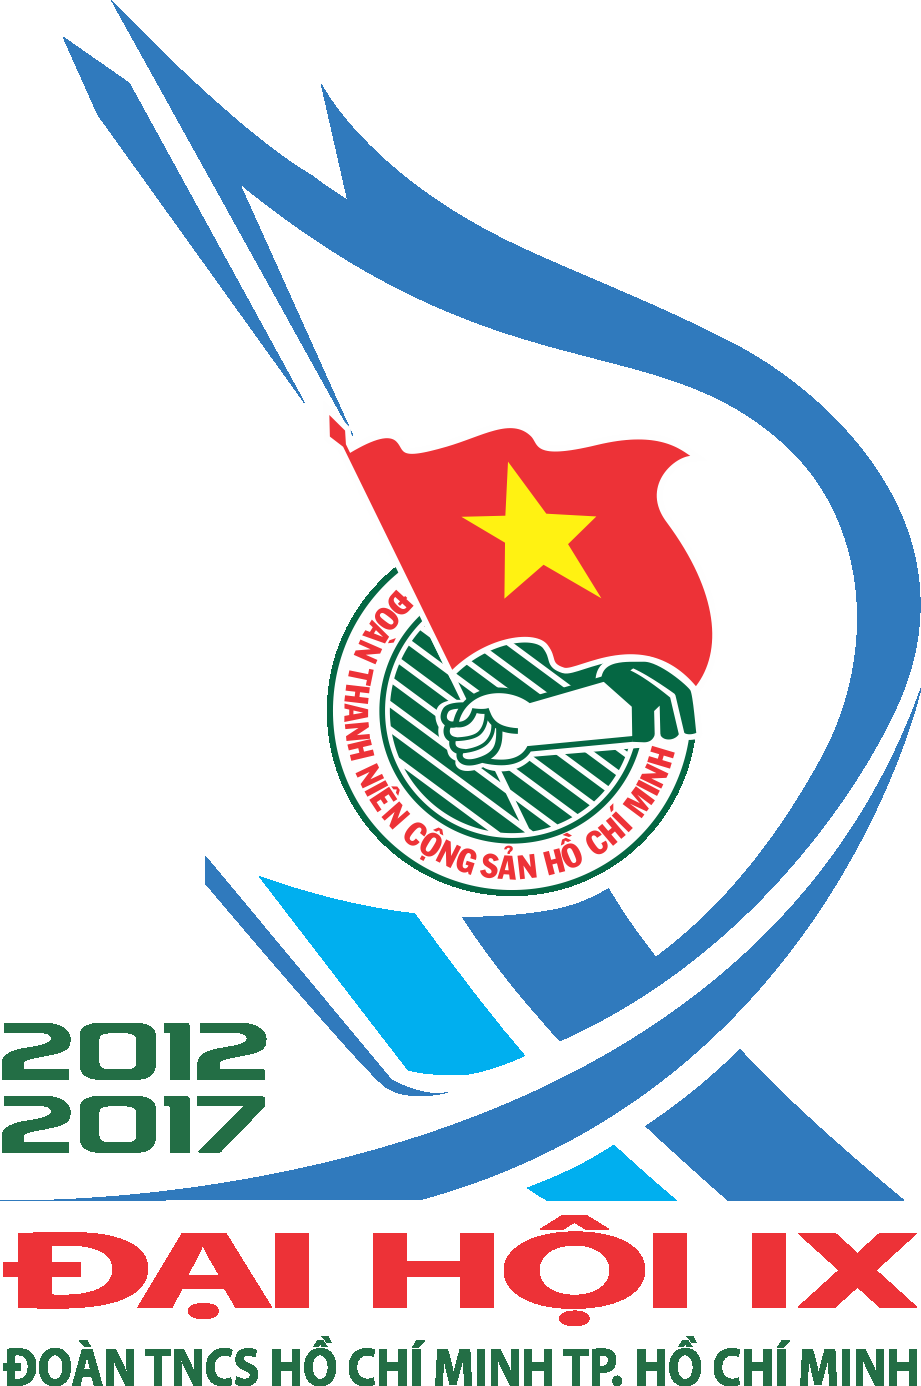 Các kỳ Đại hội Đoàn TNCS Hồ Chí Minh Thành phố Hồ Chí Minh (tiếp theo và hết)